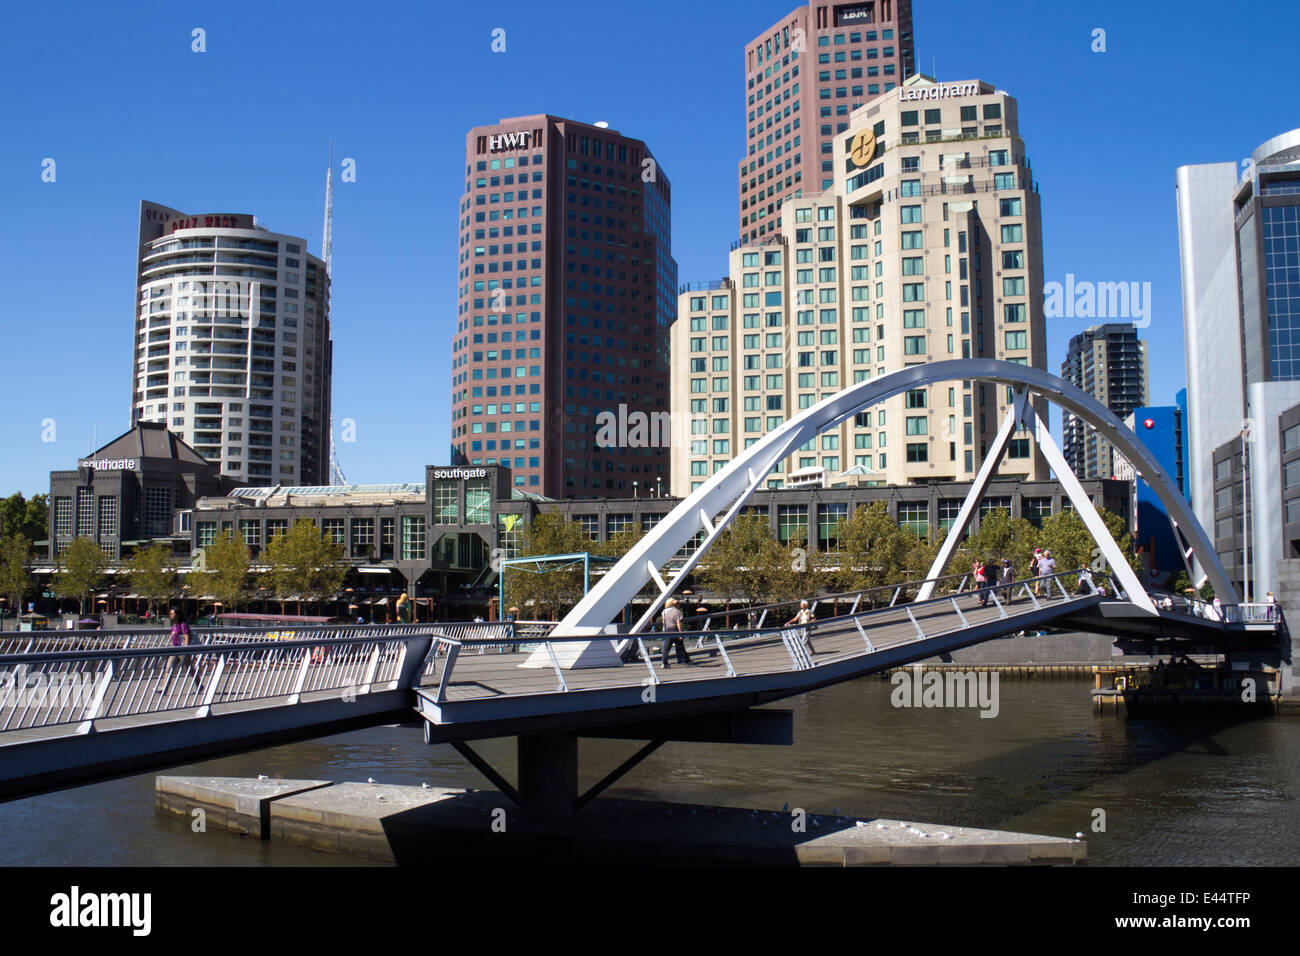 Southgate ponte pedonale, Melbourne, Victoria, Australia Foto Stock